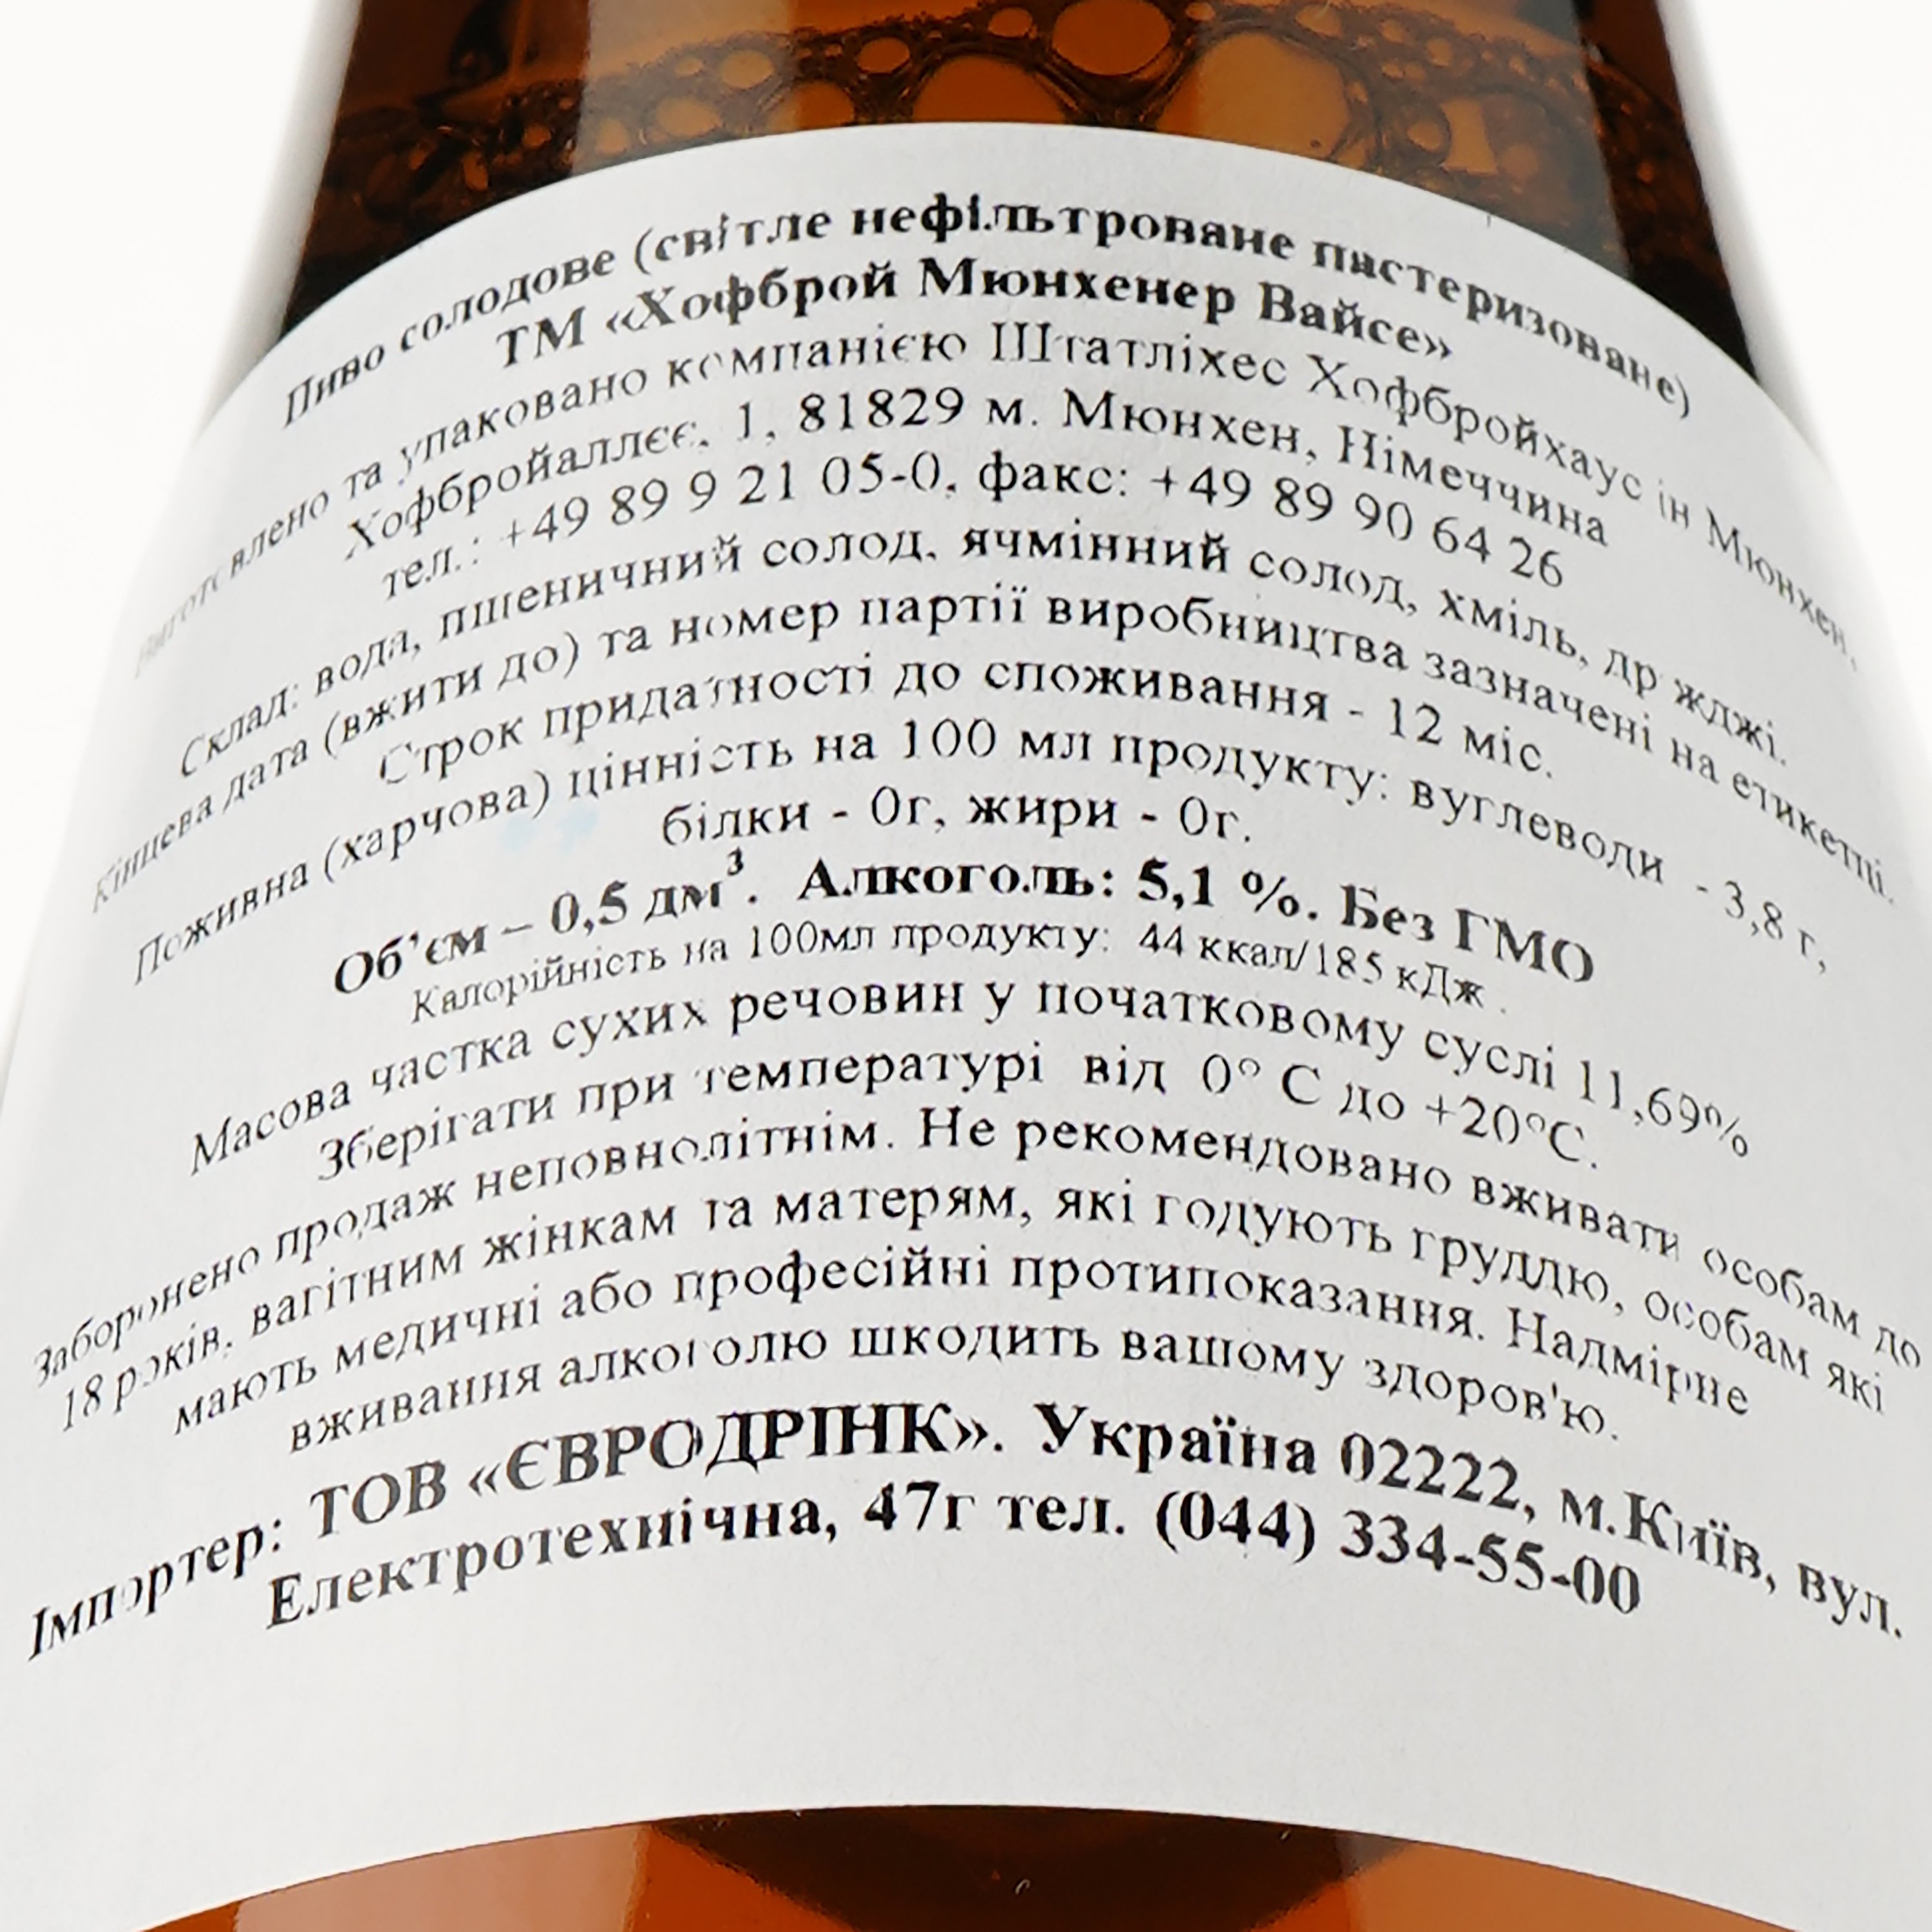 Пиво Hofbrau Munchner Weisse, світле, нефільтроване, 5,1%, 0,5 л (469134) - фото 3